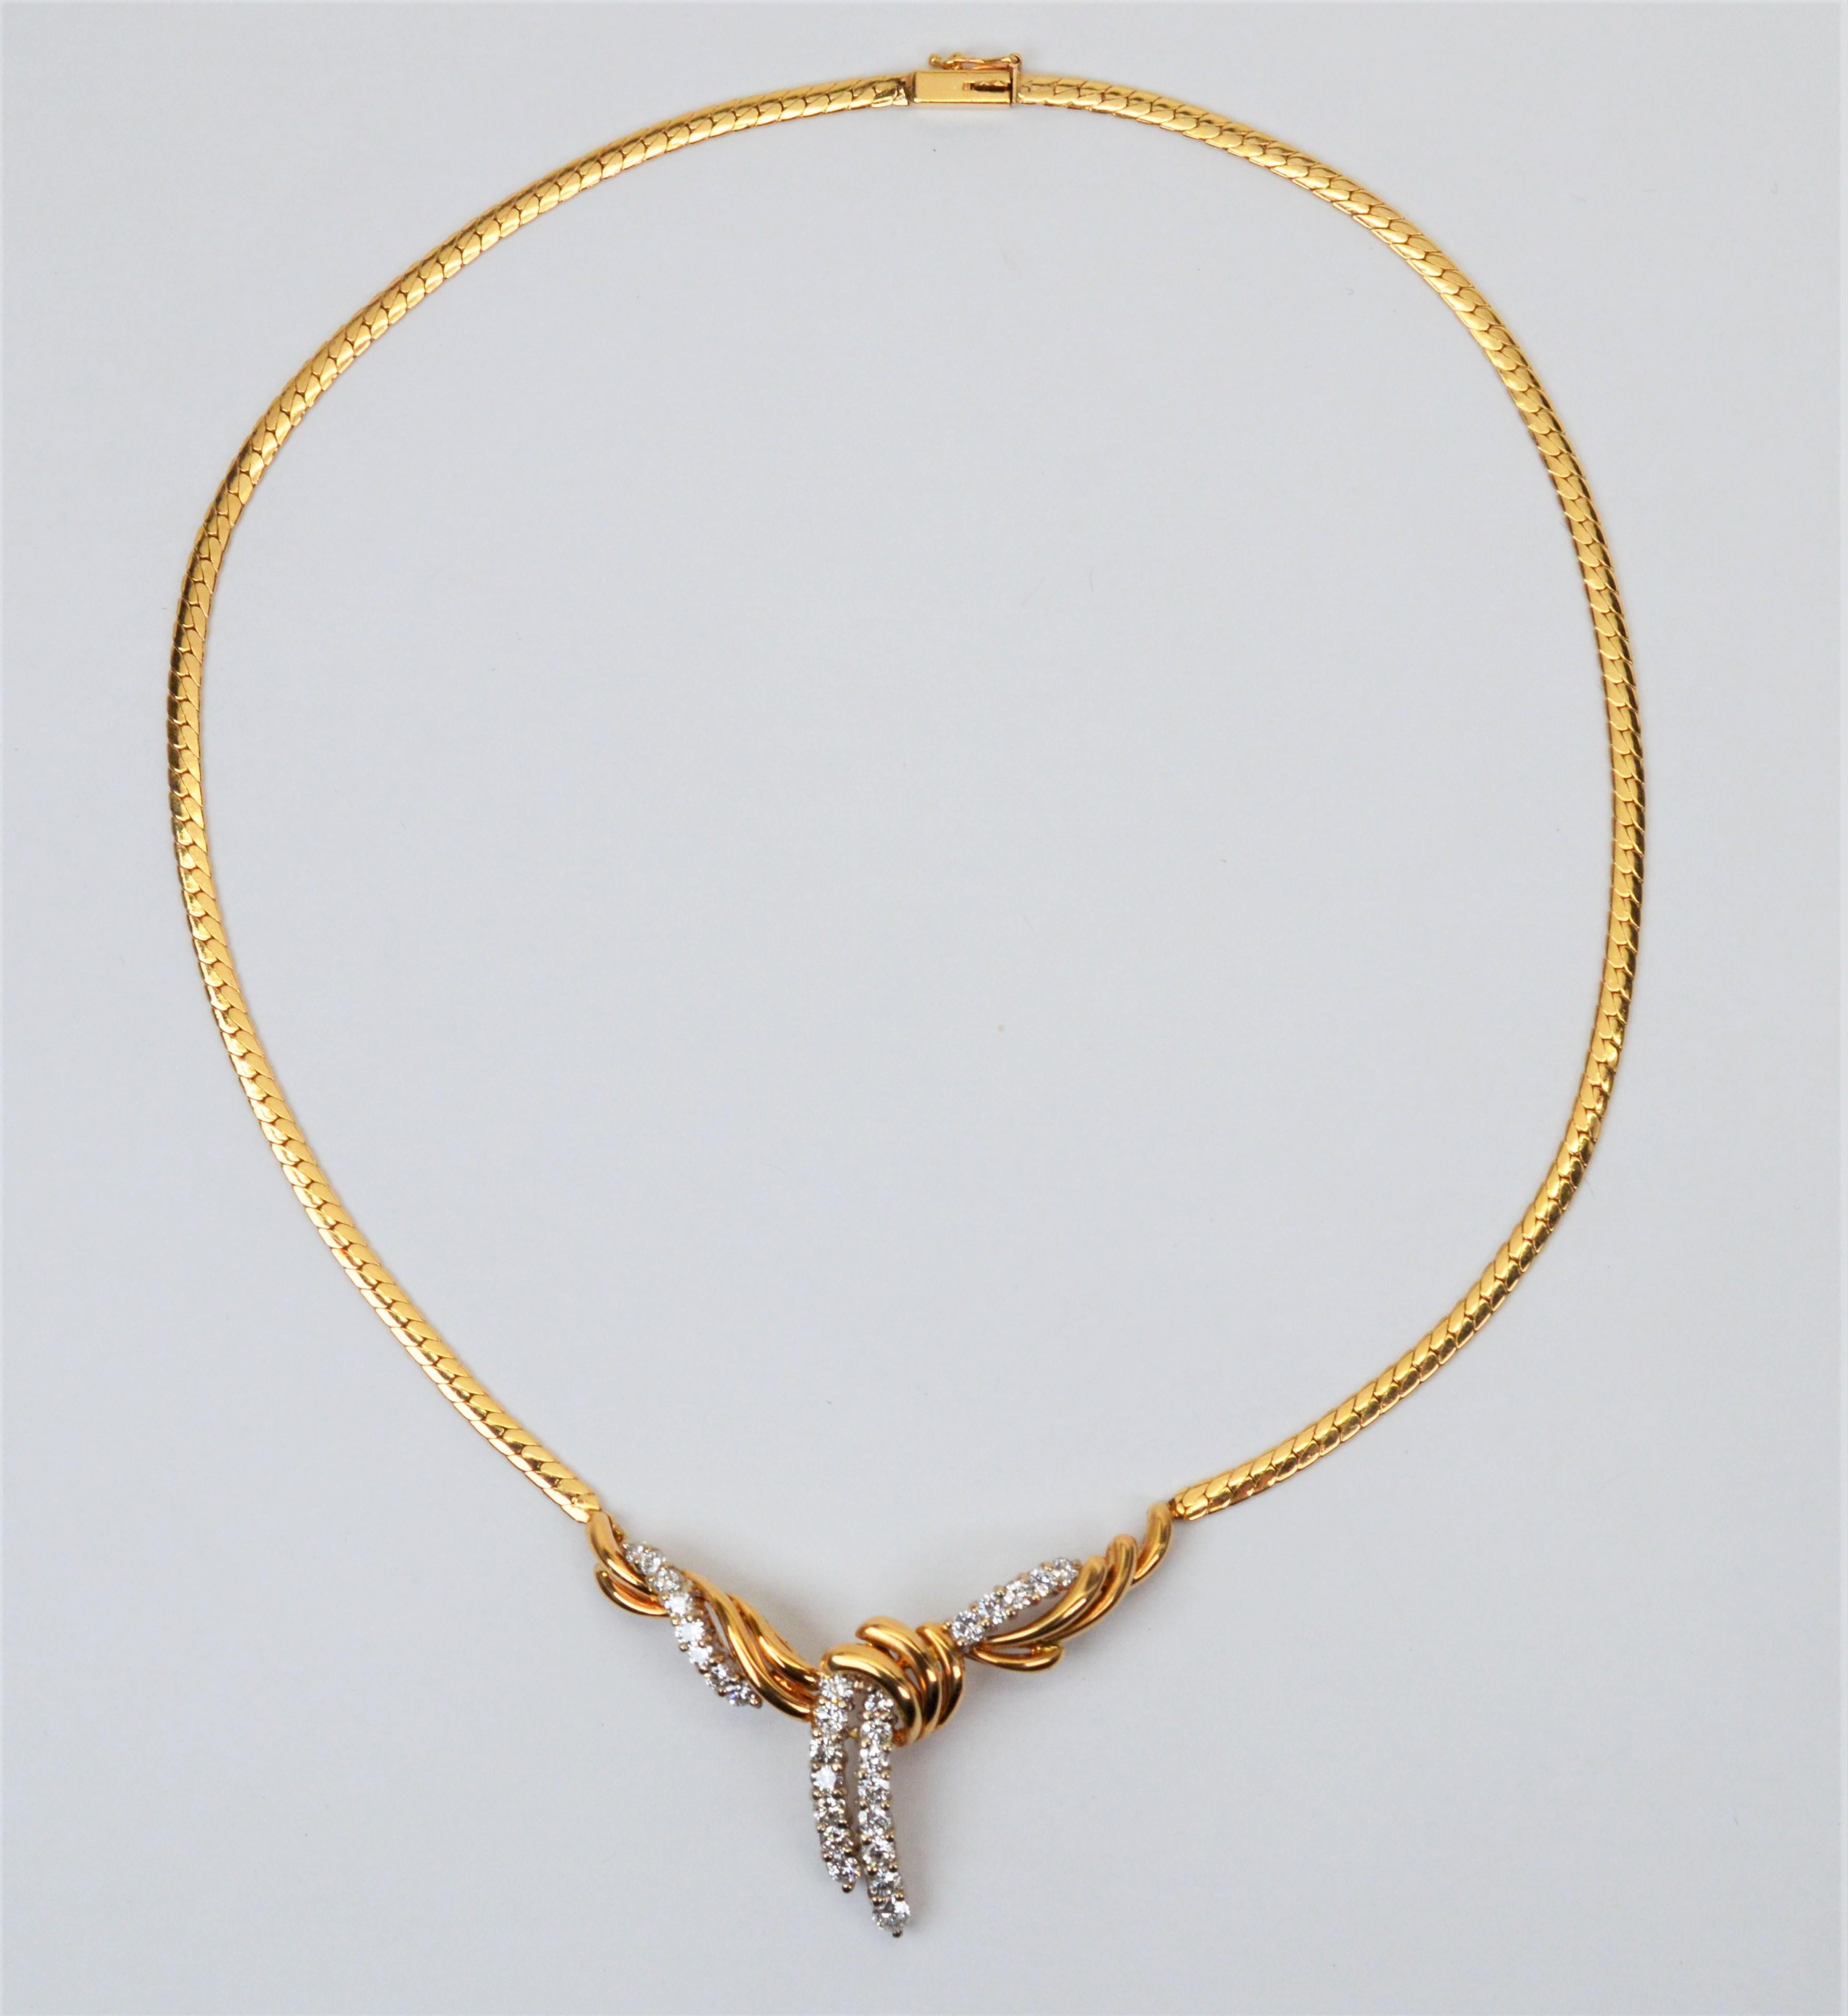 Eine prächtige Wahl für einen besonderen Anlass. Diese raffinierte, von einem Lariat inspirierte Anhänger-Halskette verfügt über einen integrierten, geschwungenen Knoten aus 14-karätigem Gelbgold, der mit achtundzwanzig runden, facettierten